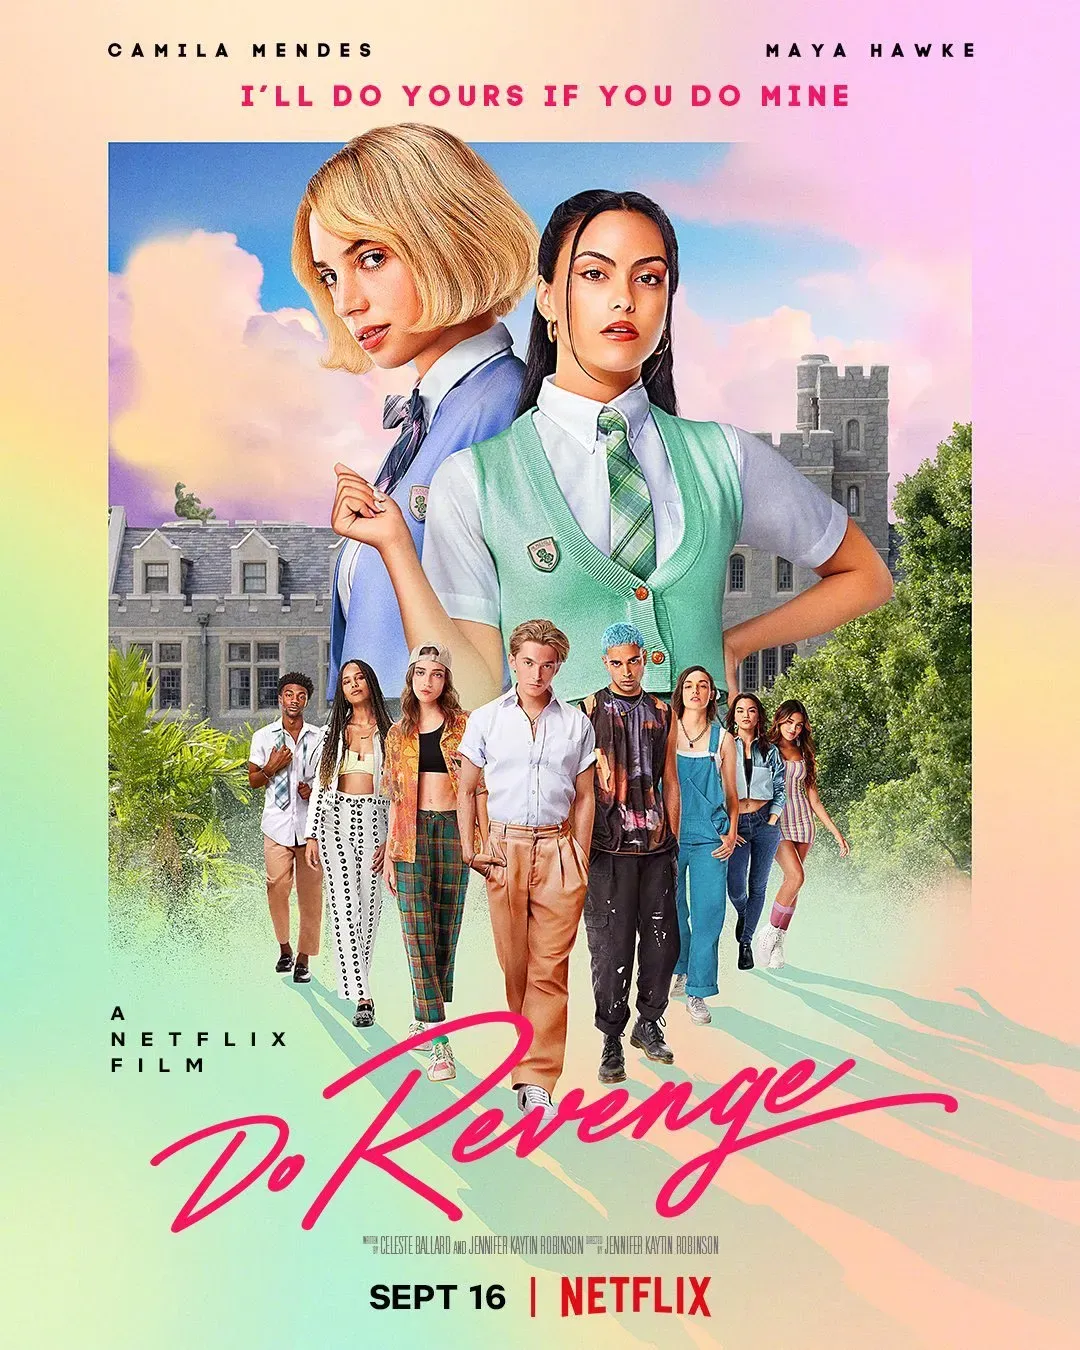 Netflix's new film 'Do Revenge' releases Official Trailer and poster | FMV6